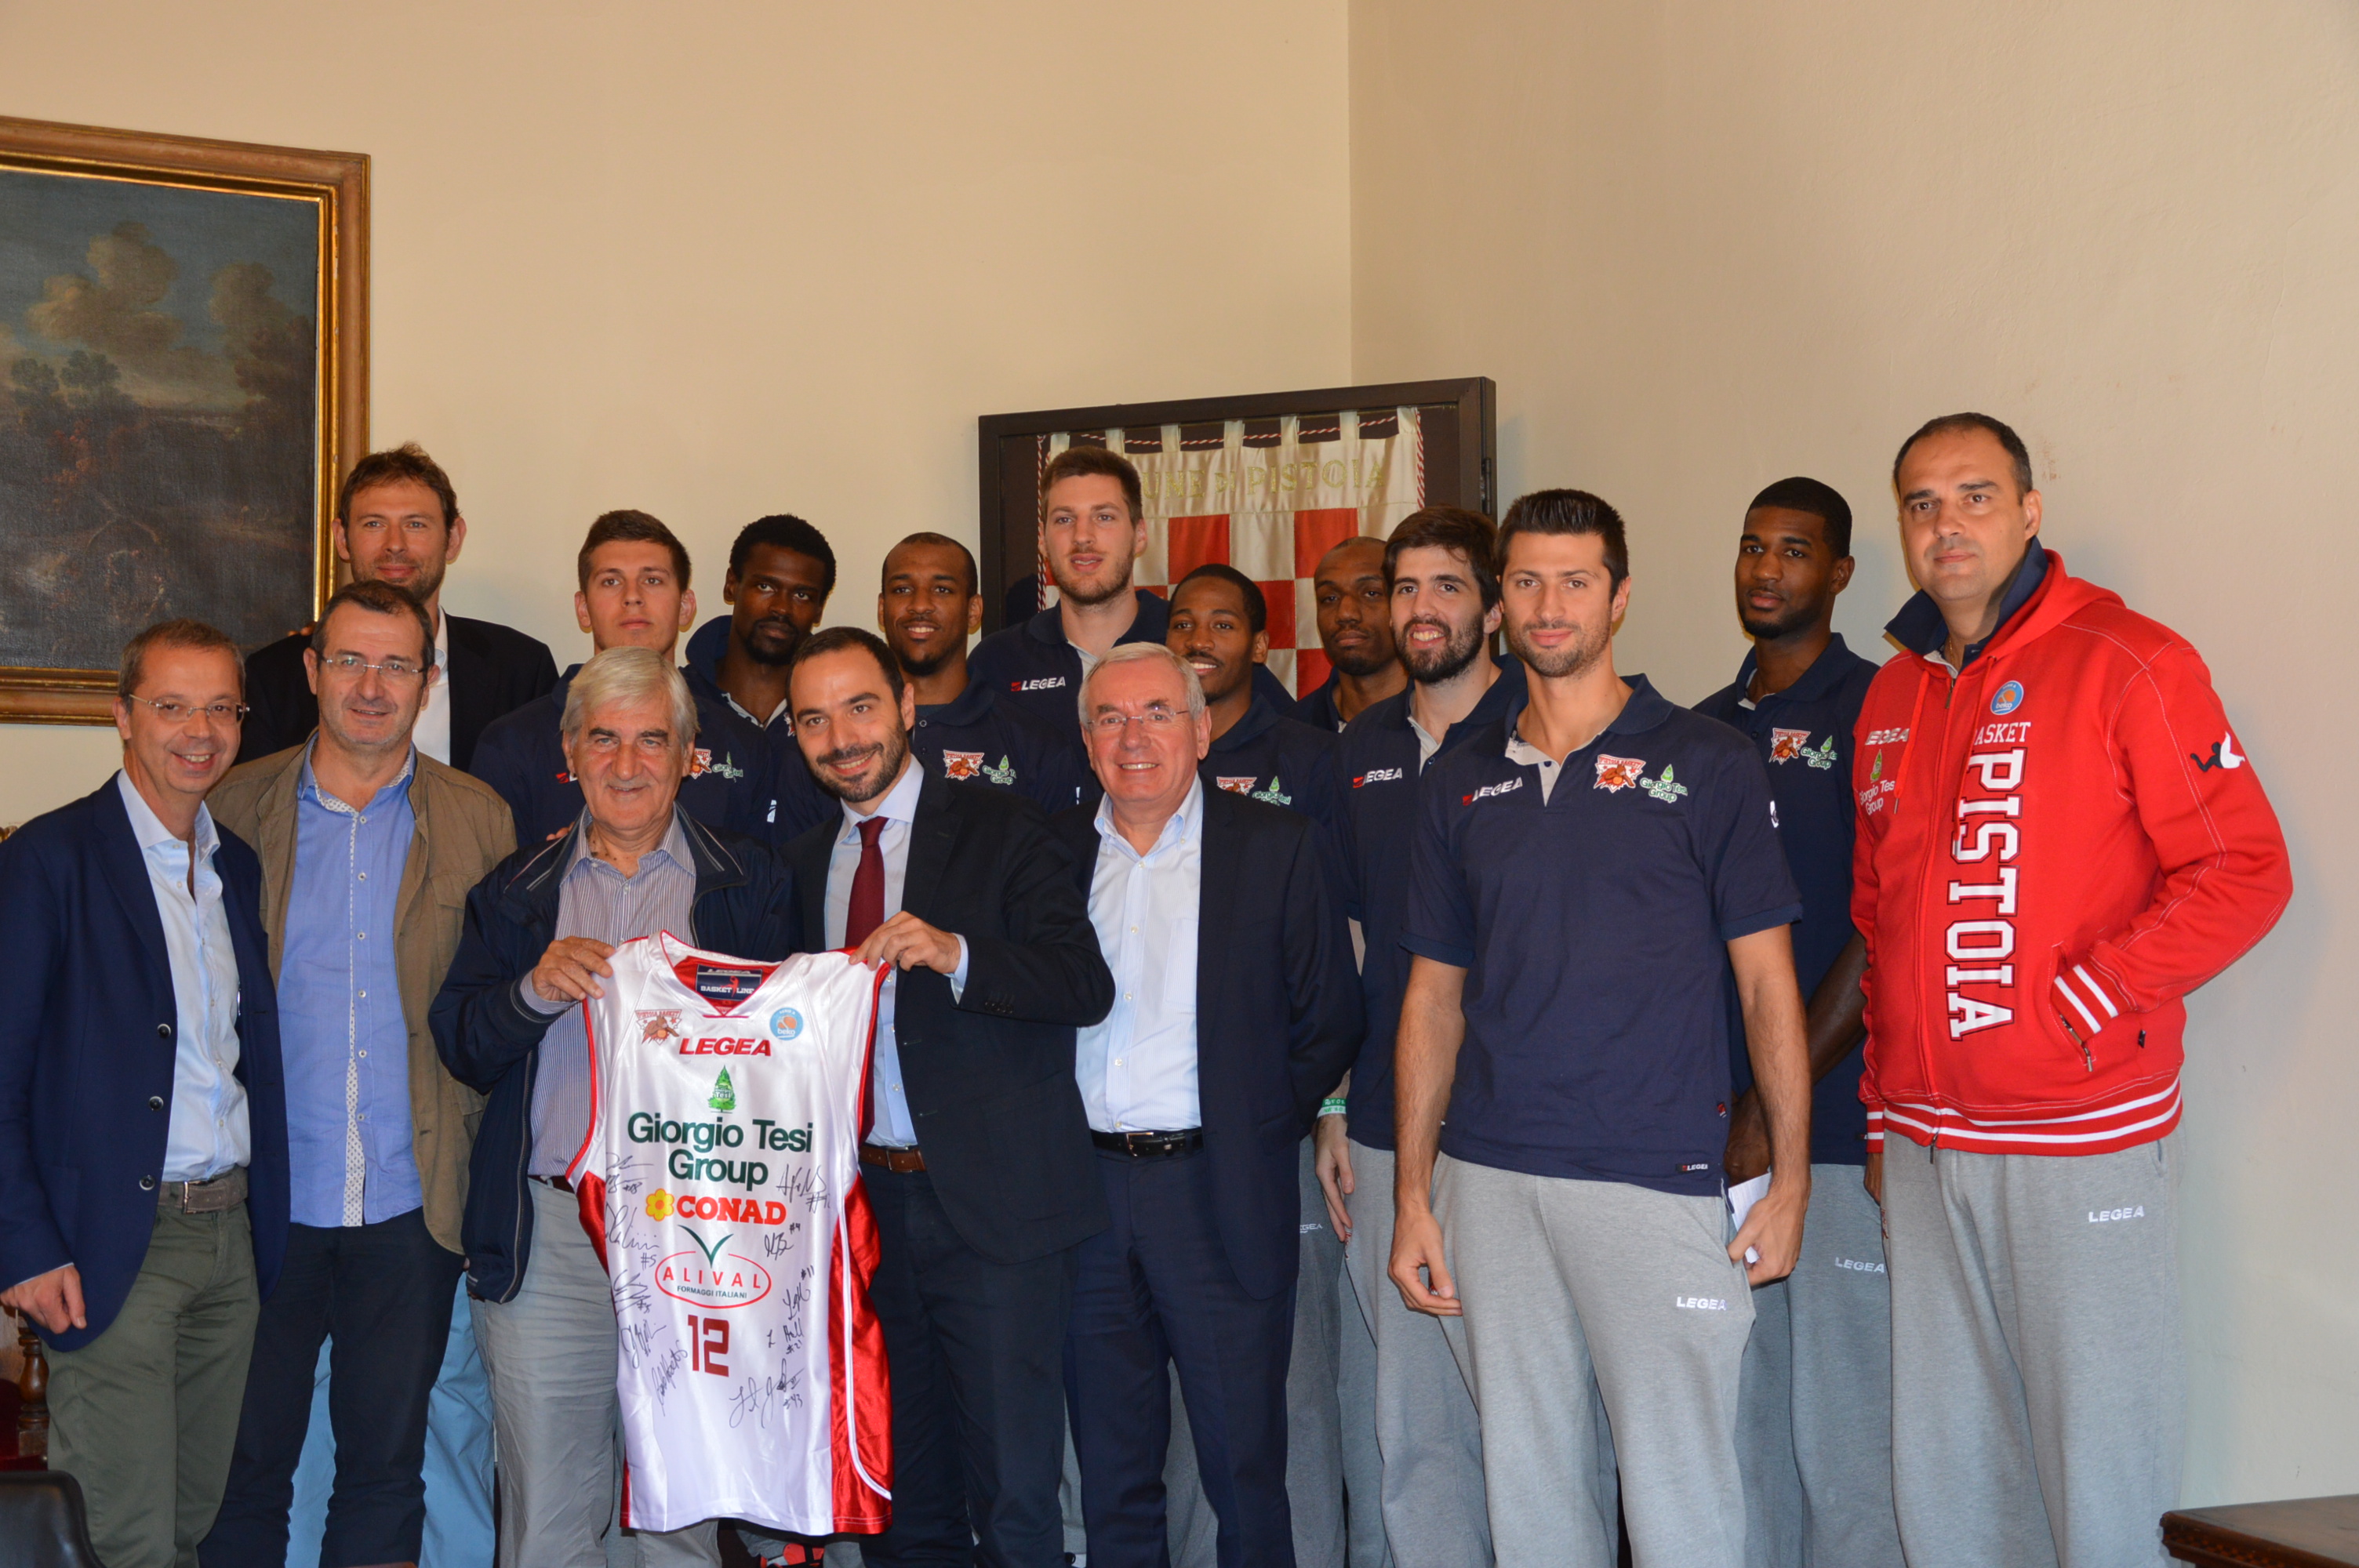  il sindaco Bertinelli e l’assessore allo sport Tuci hanno incontrato i giocatori e i dirigenti della Giorgio Tesi Group Pistoia 